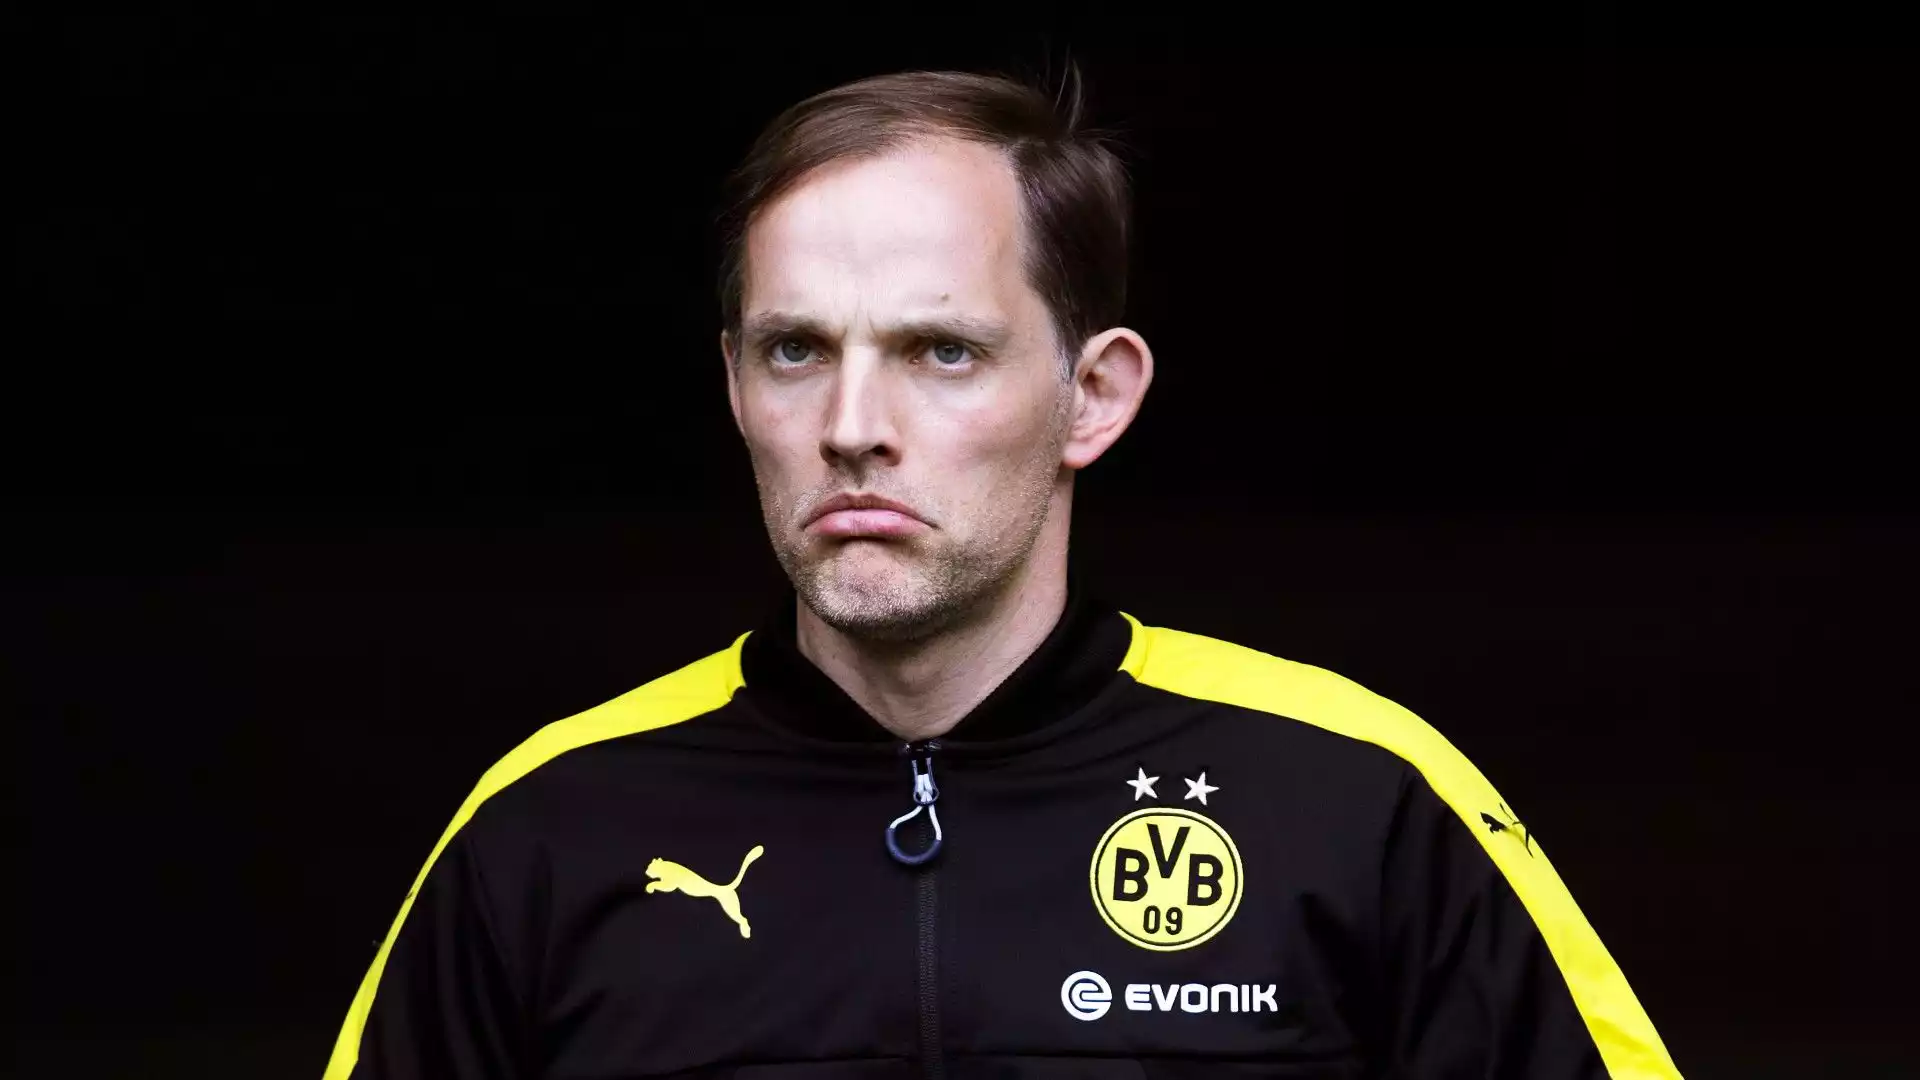 A maggio 2017 ha deciso di separarsi dal Borussia Dortmund